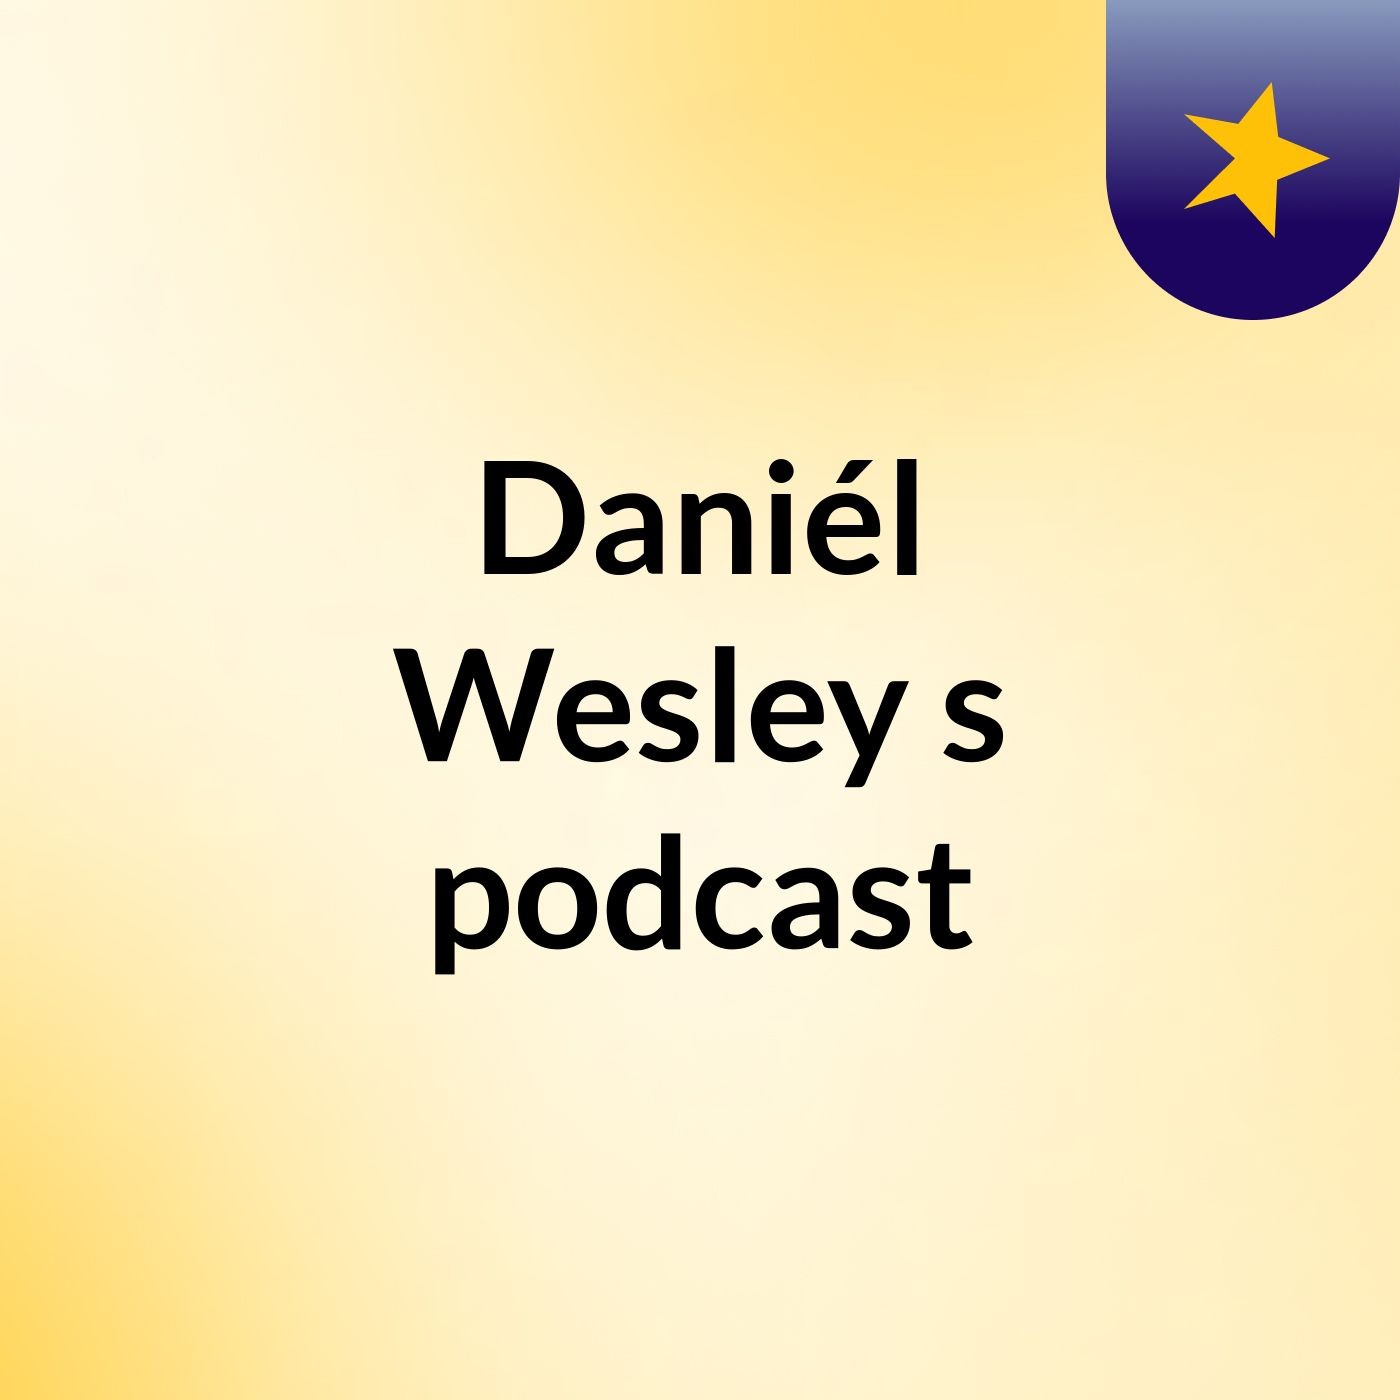 Daniél Wesley's podcast